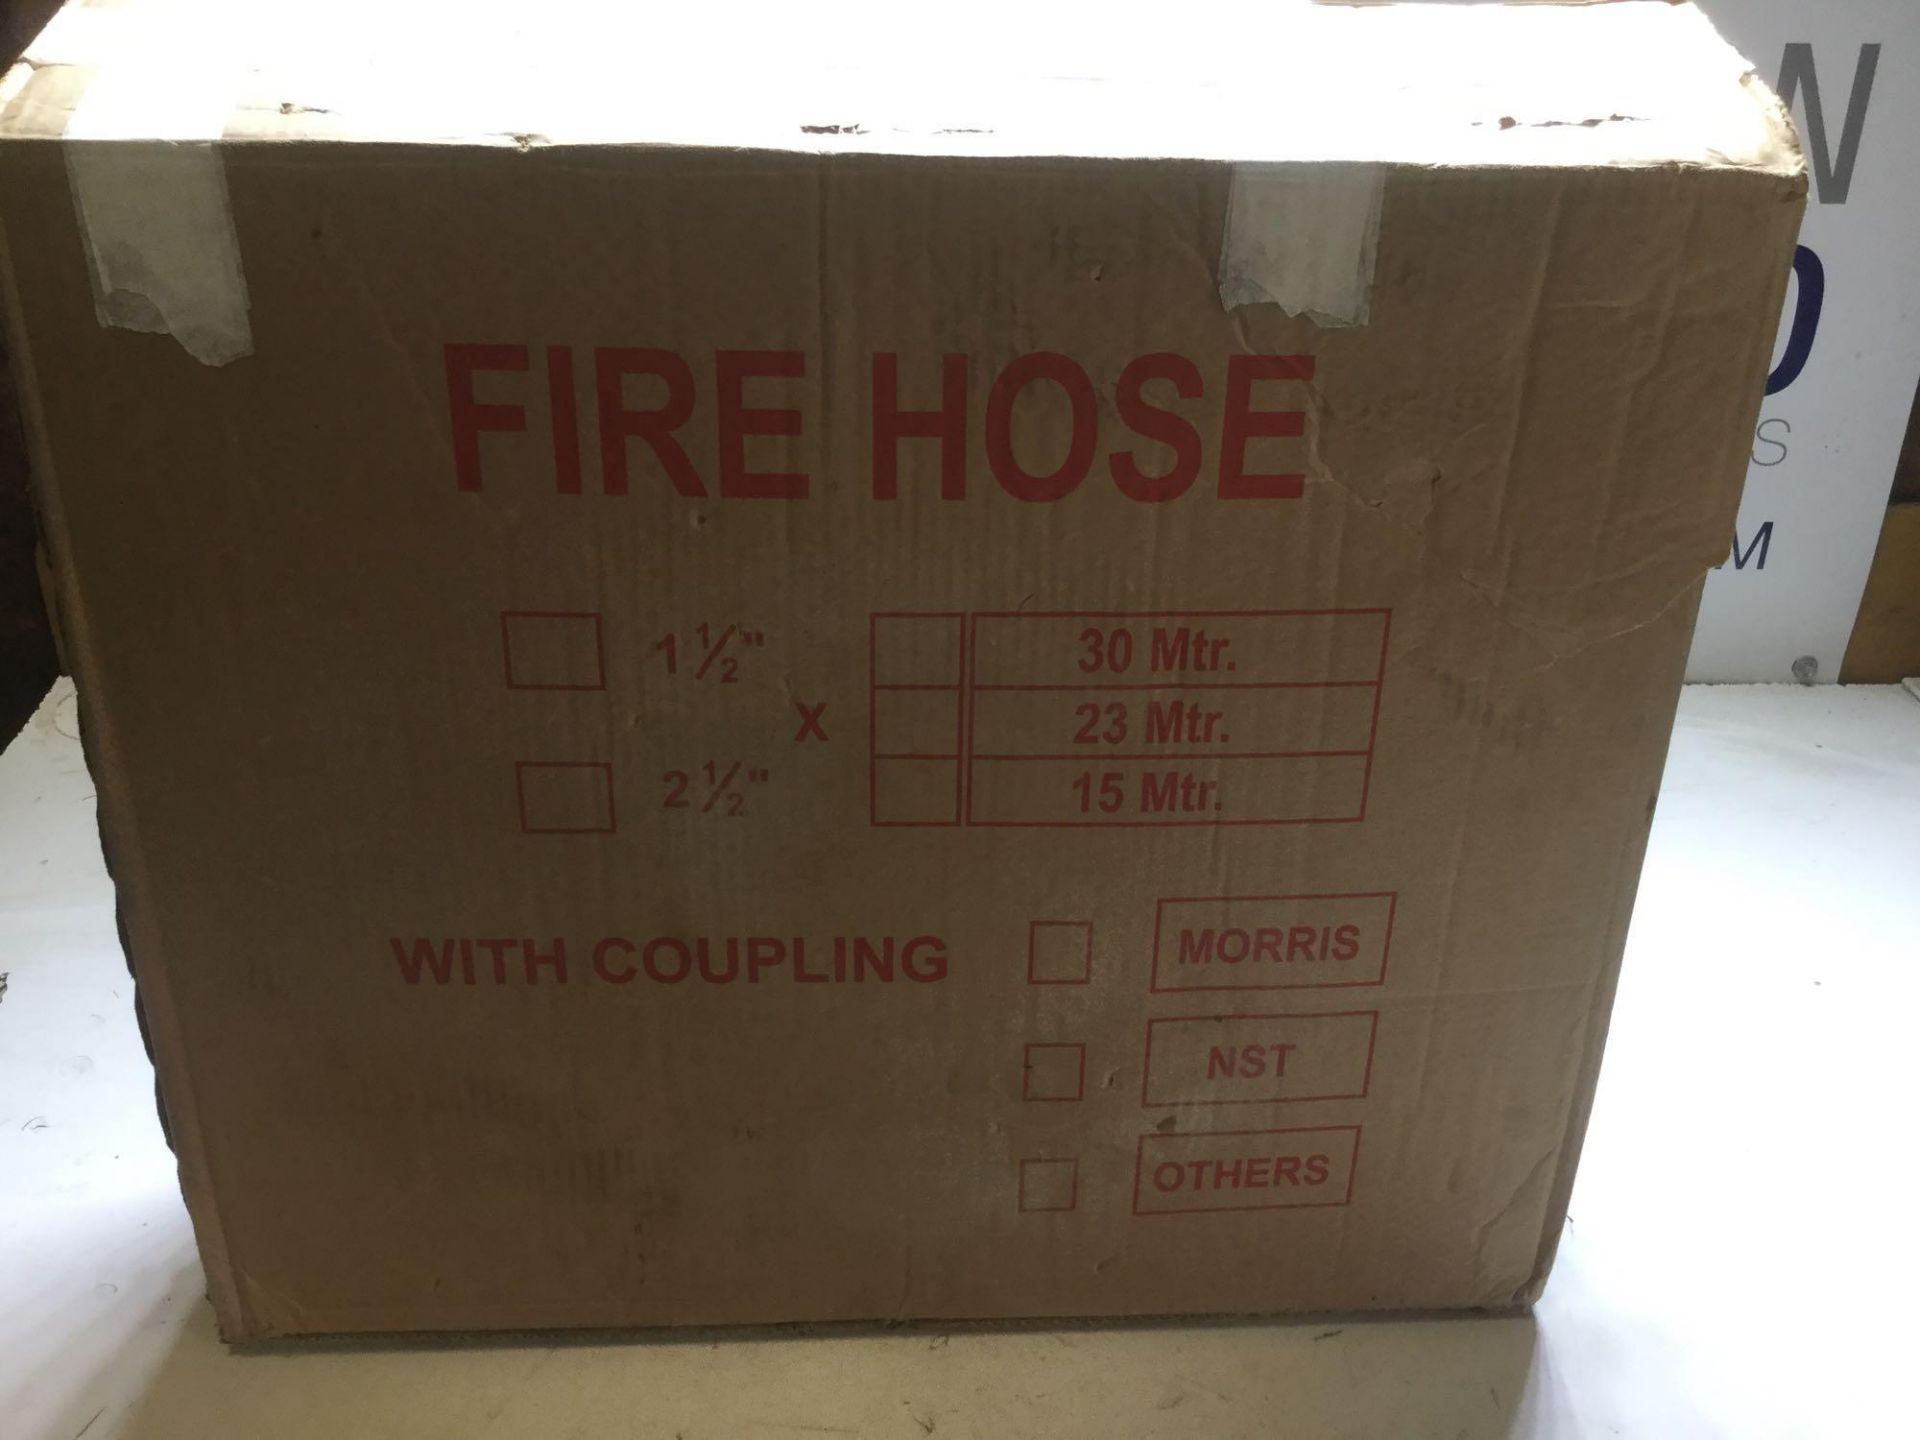 Maffco Fire Hose 2 1/2 inch Diameter X 30mts - Image 4 of 4